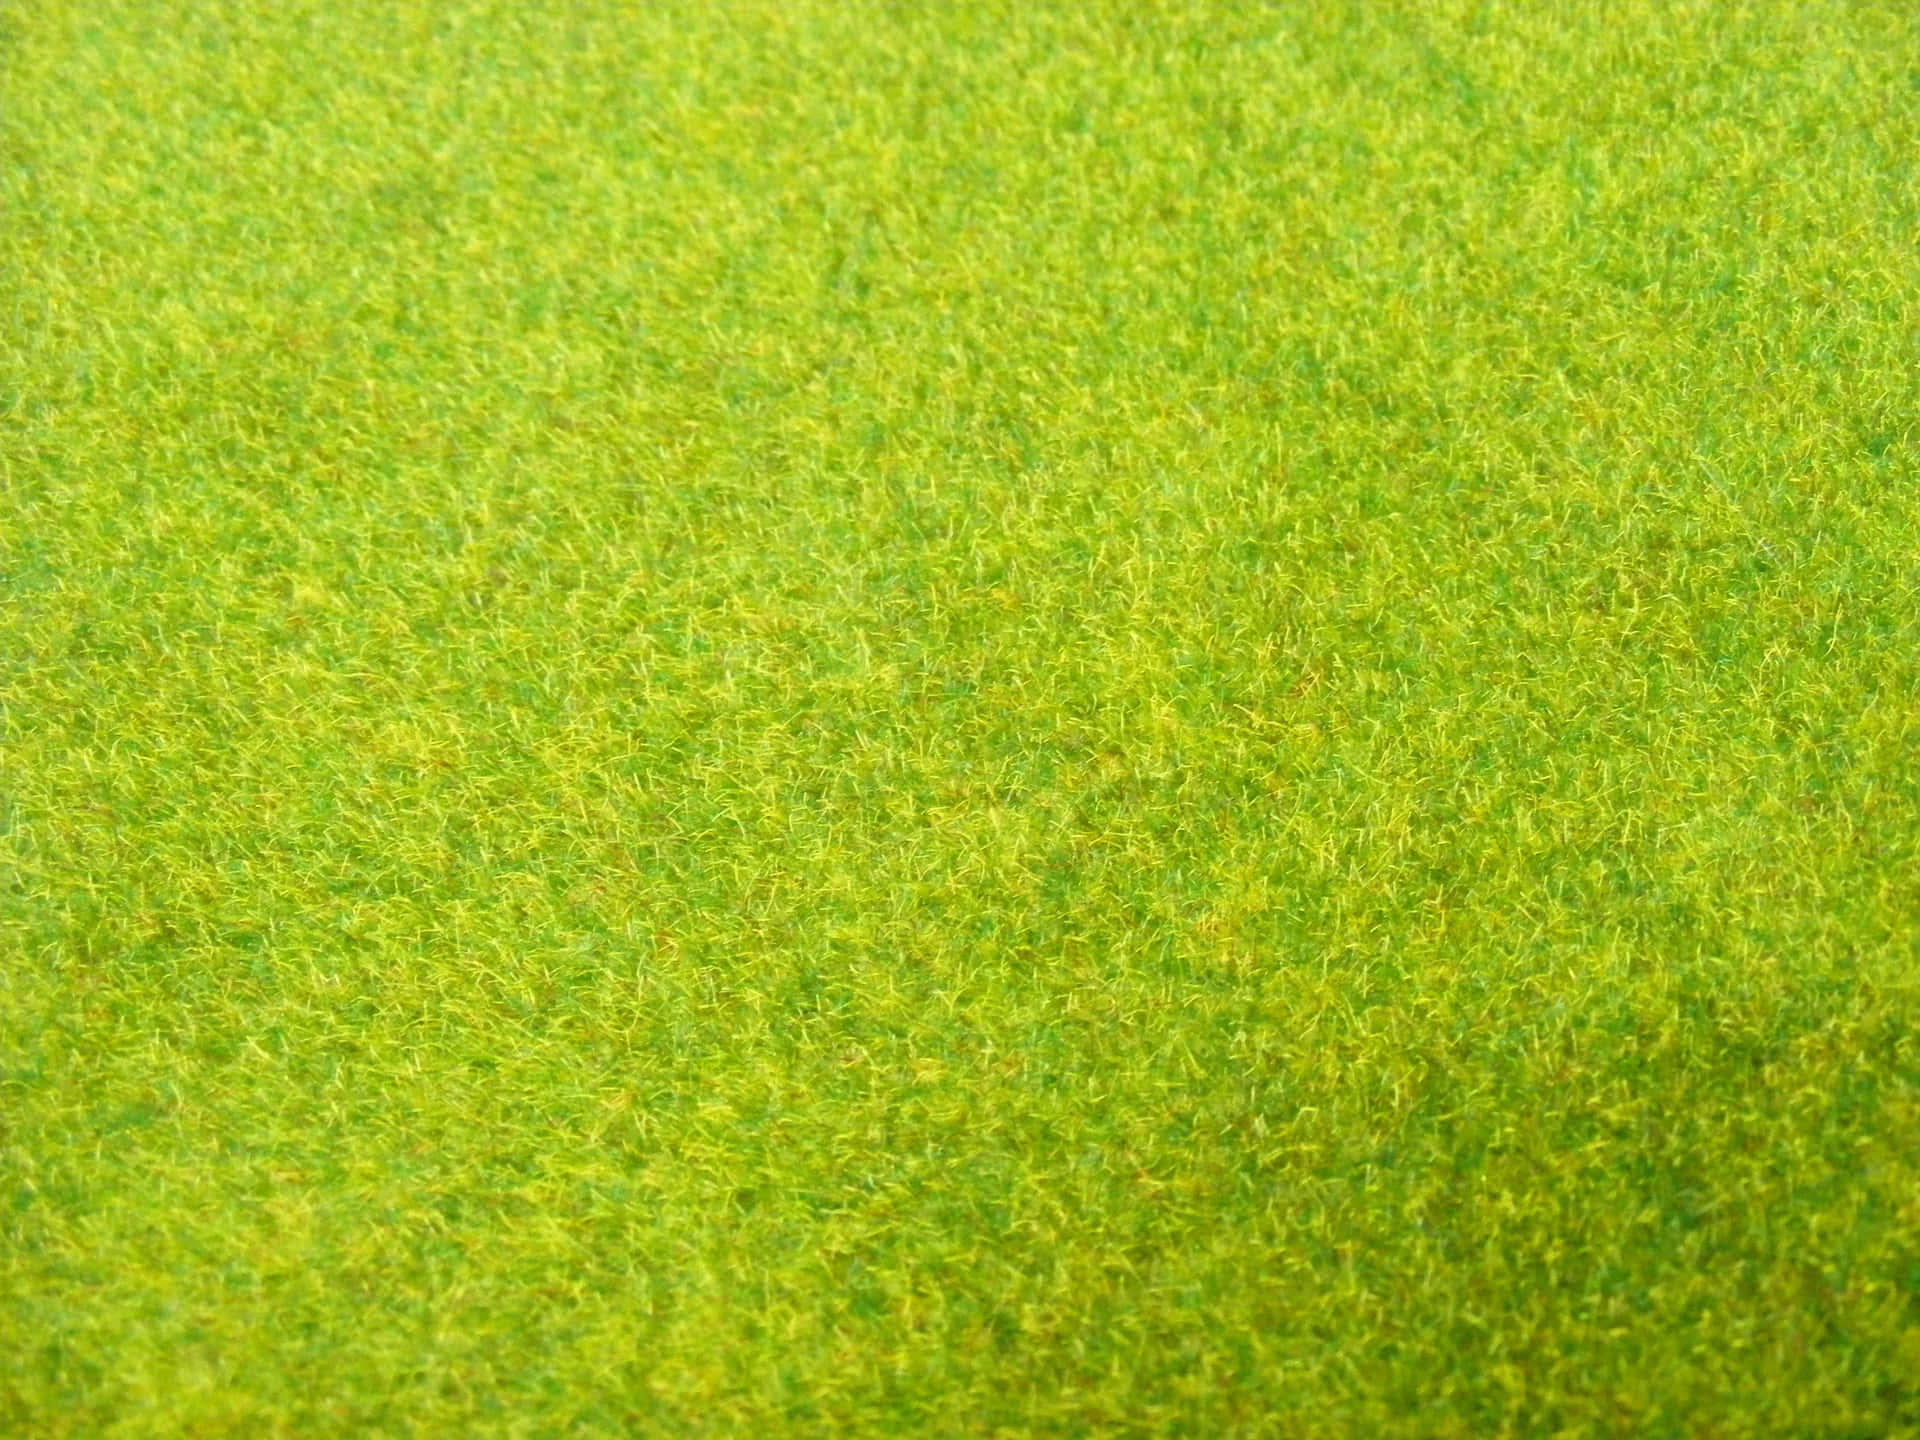 Closeup of green grass texture